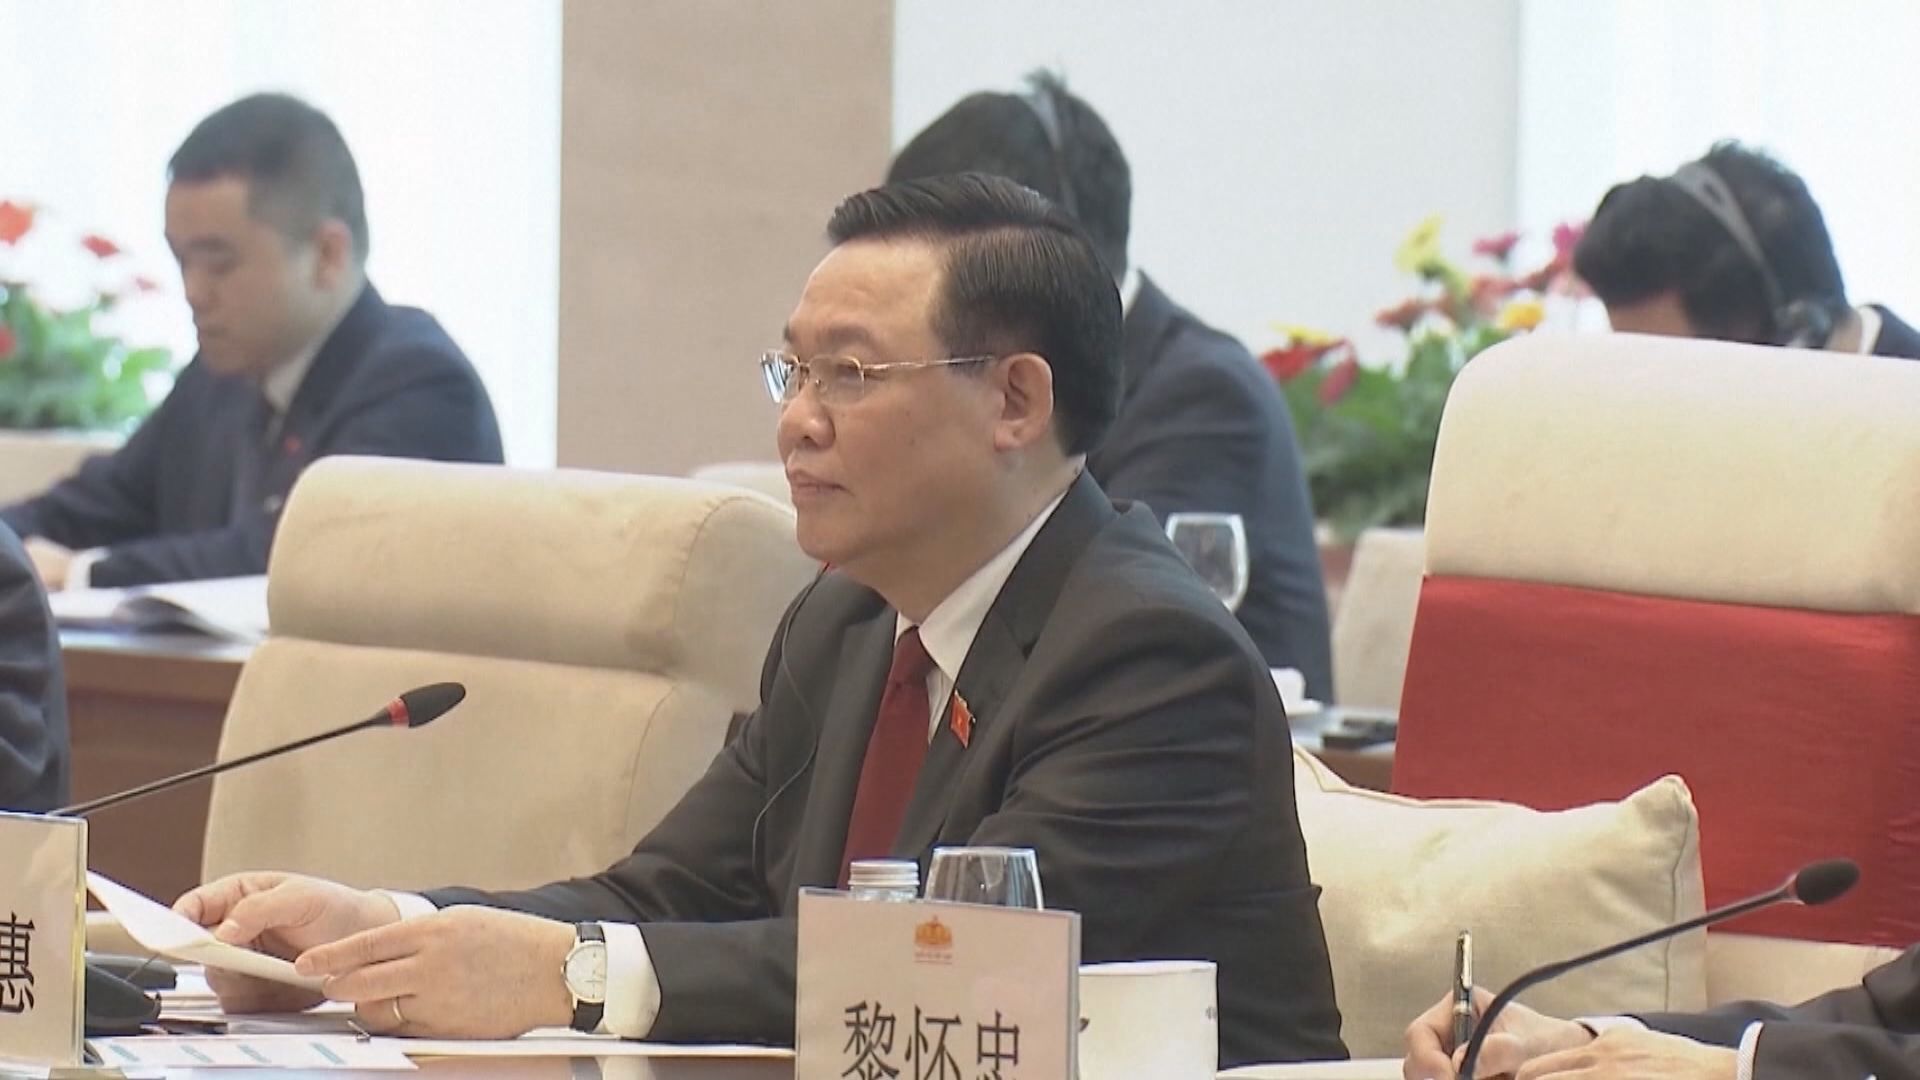 越南國會主席王庭惠請辭 越共指他違反黨紀影響聲譽